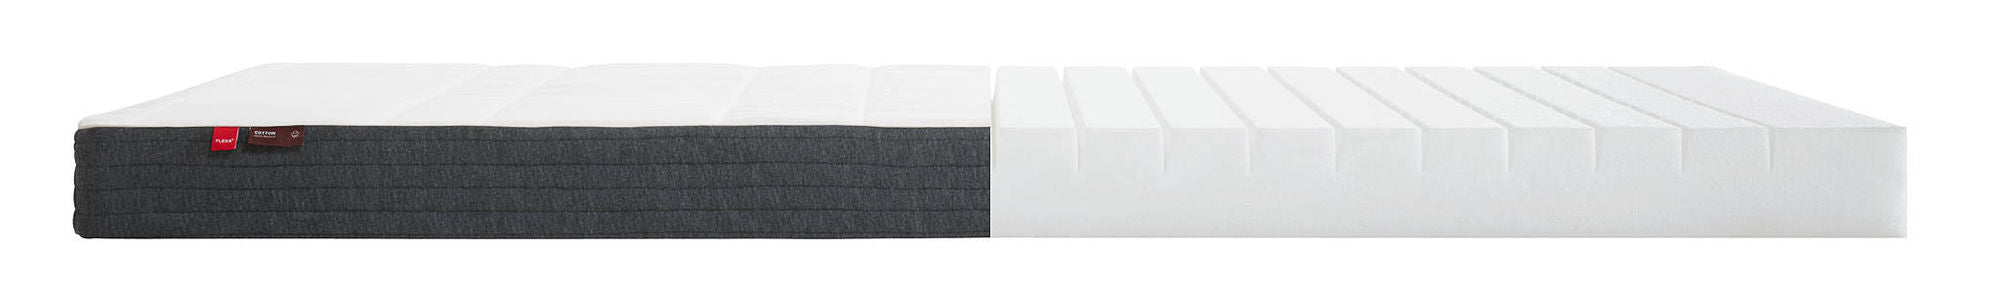 FLEXA FLEXA foam mattress, 180X90 cotton cover